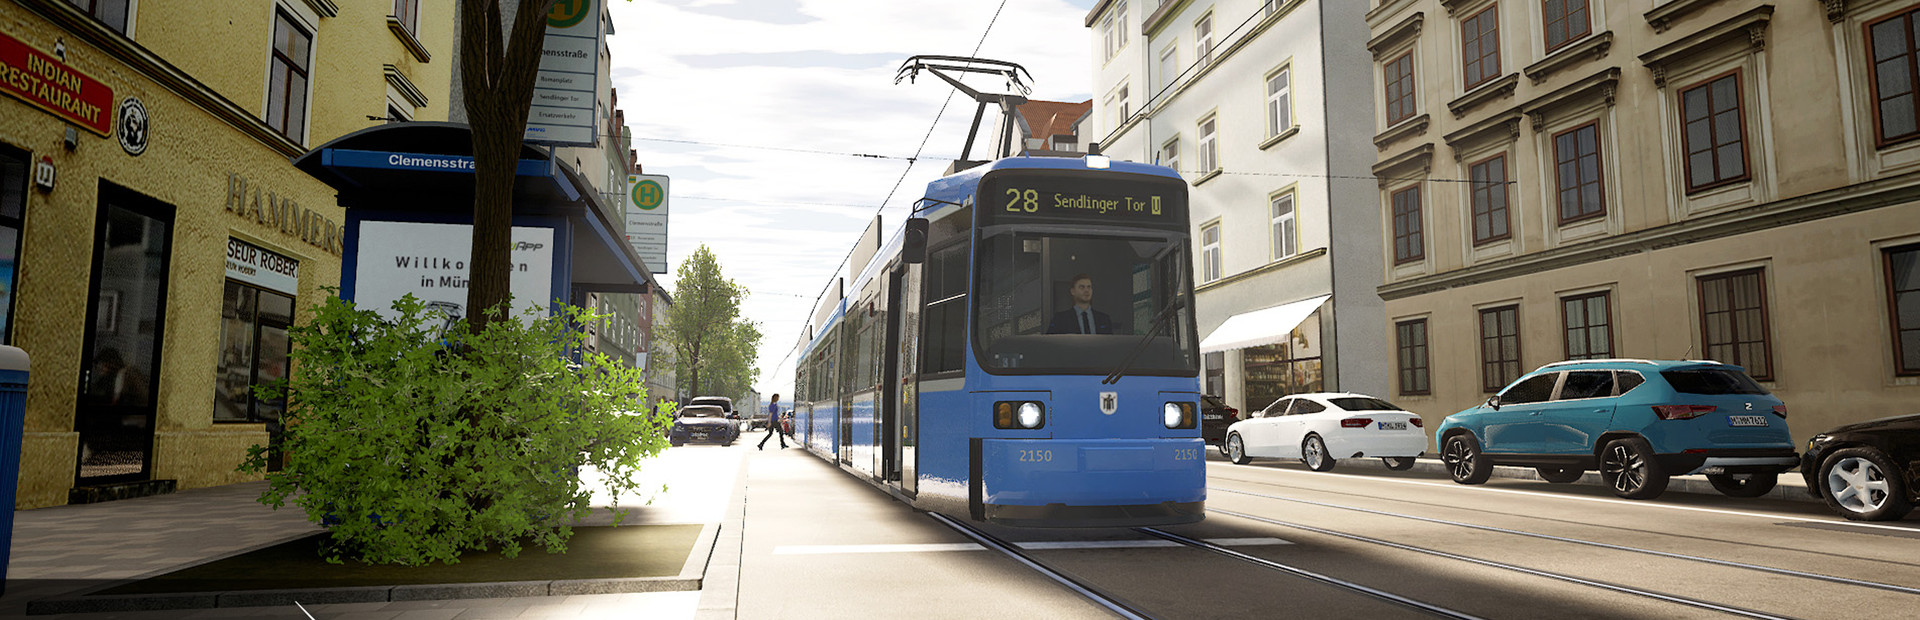 TramSim Munich - The Tram Simulator cover image